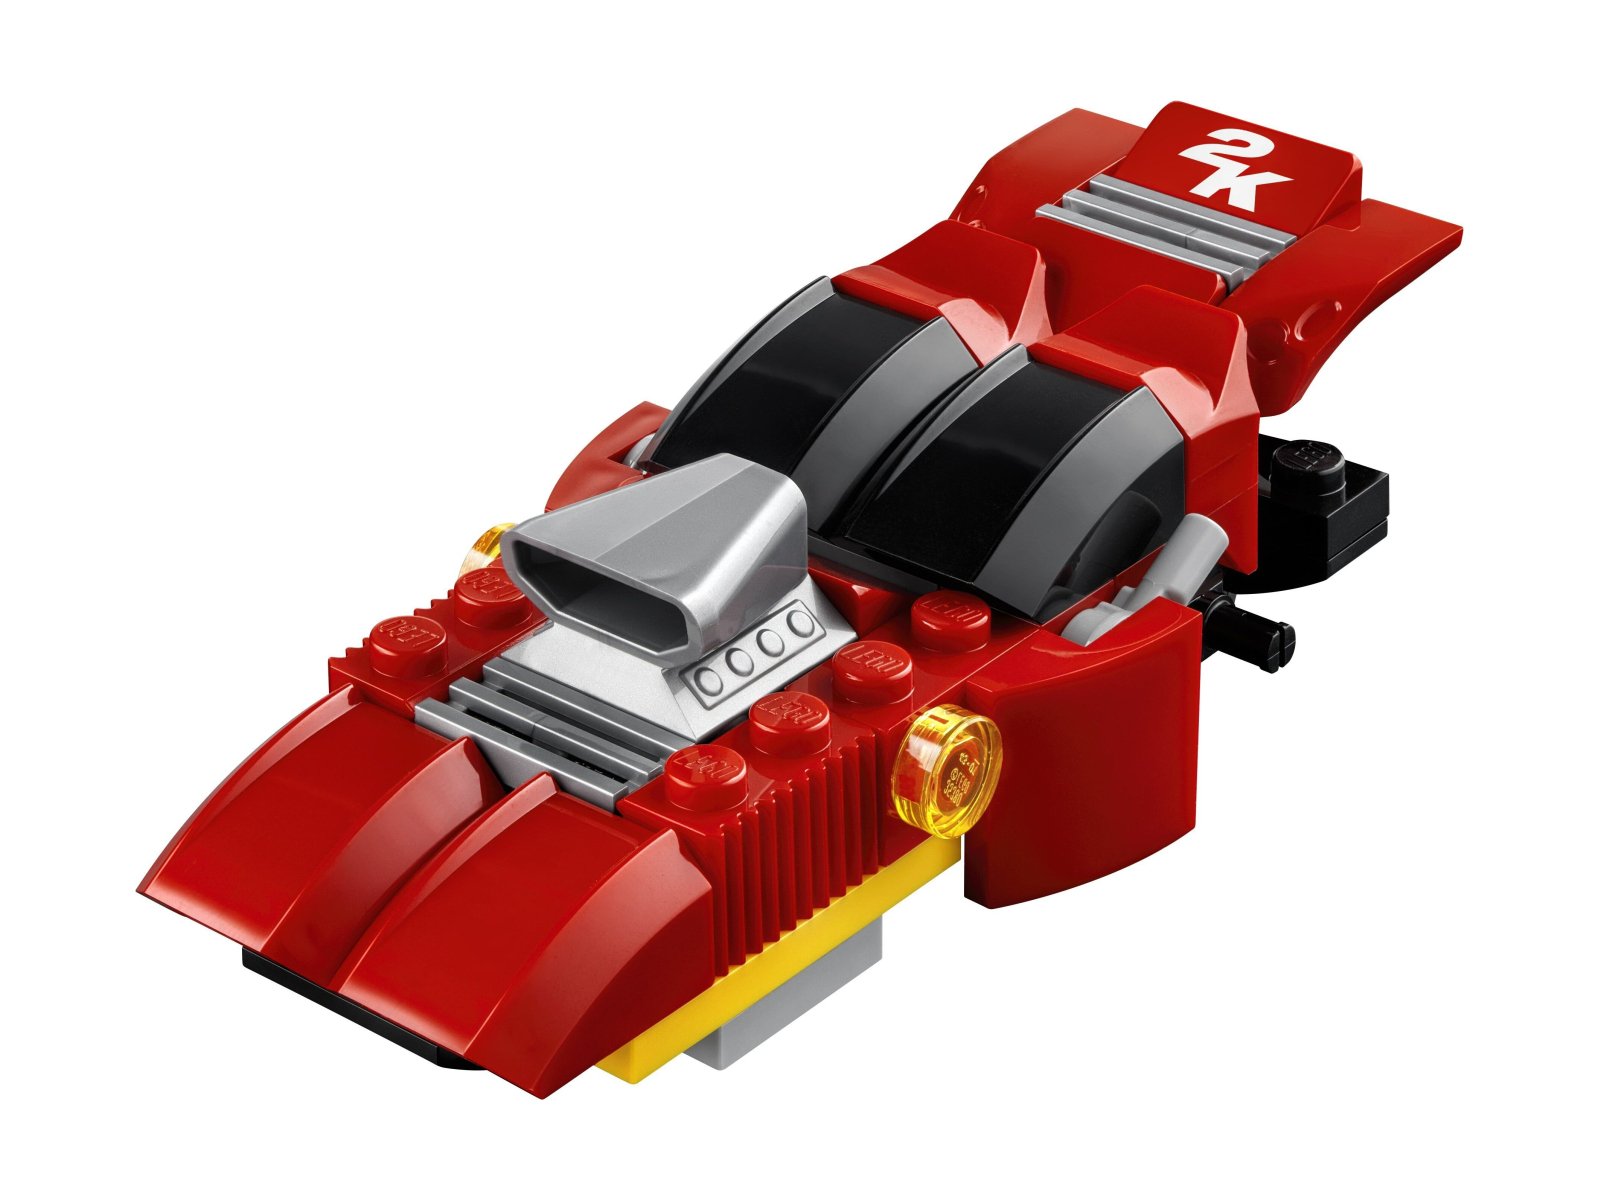 LEGO Games 30630 Wyścigówka Aquadirt